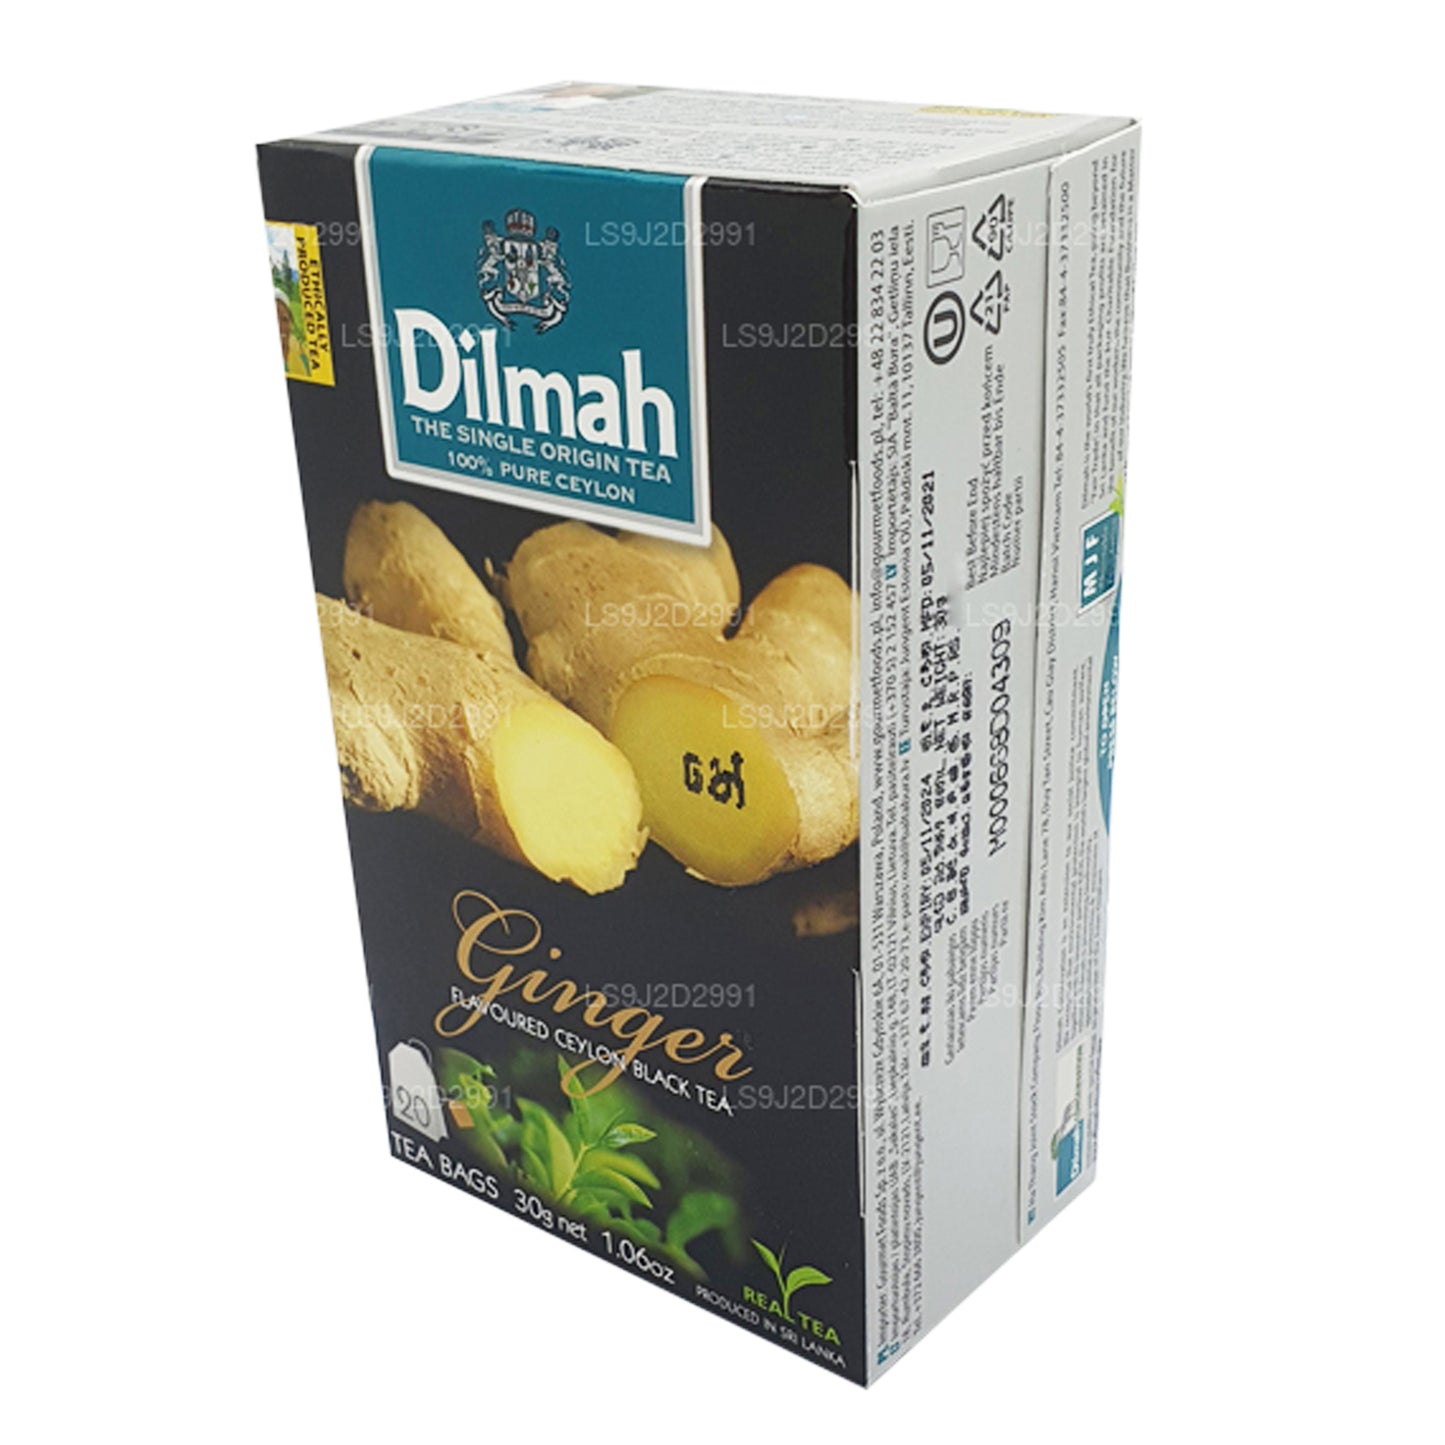 Dilmah zwarte thee met gembersmaak (30 g) 20 theezakjes